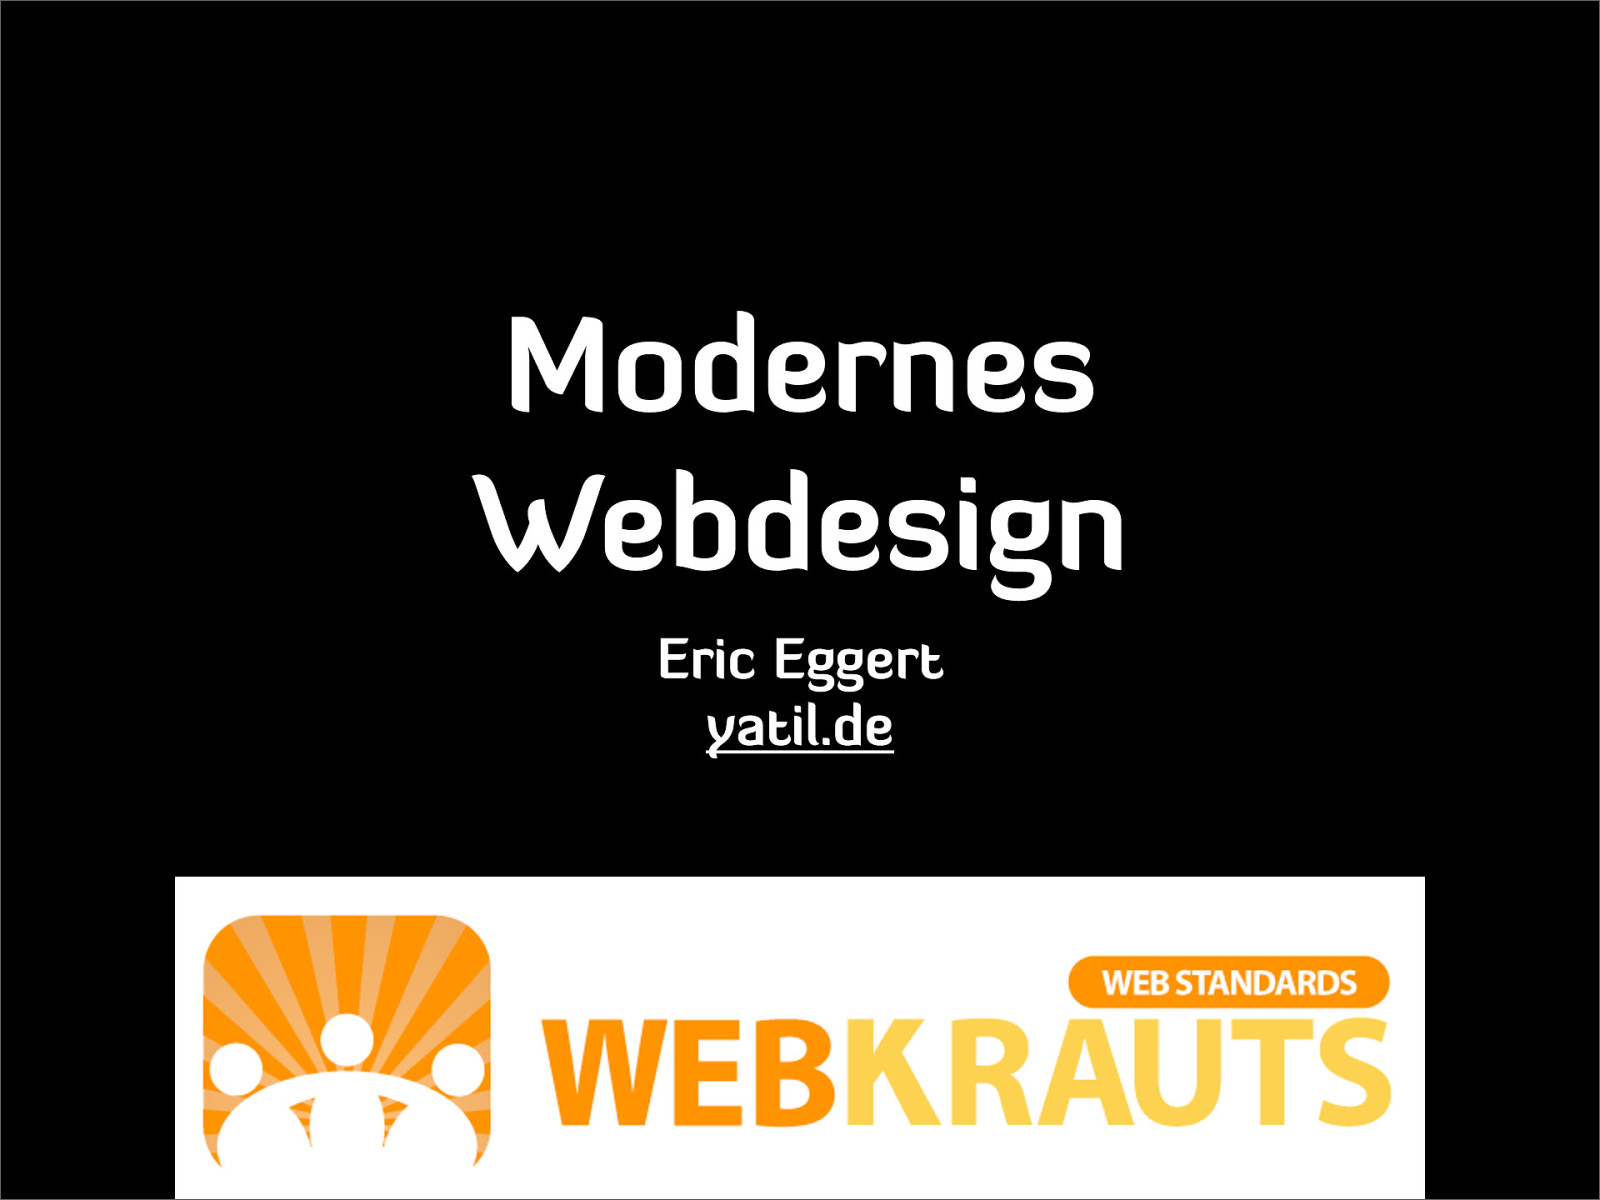 Modernes Webdesign